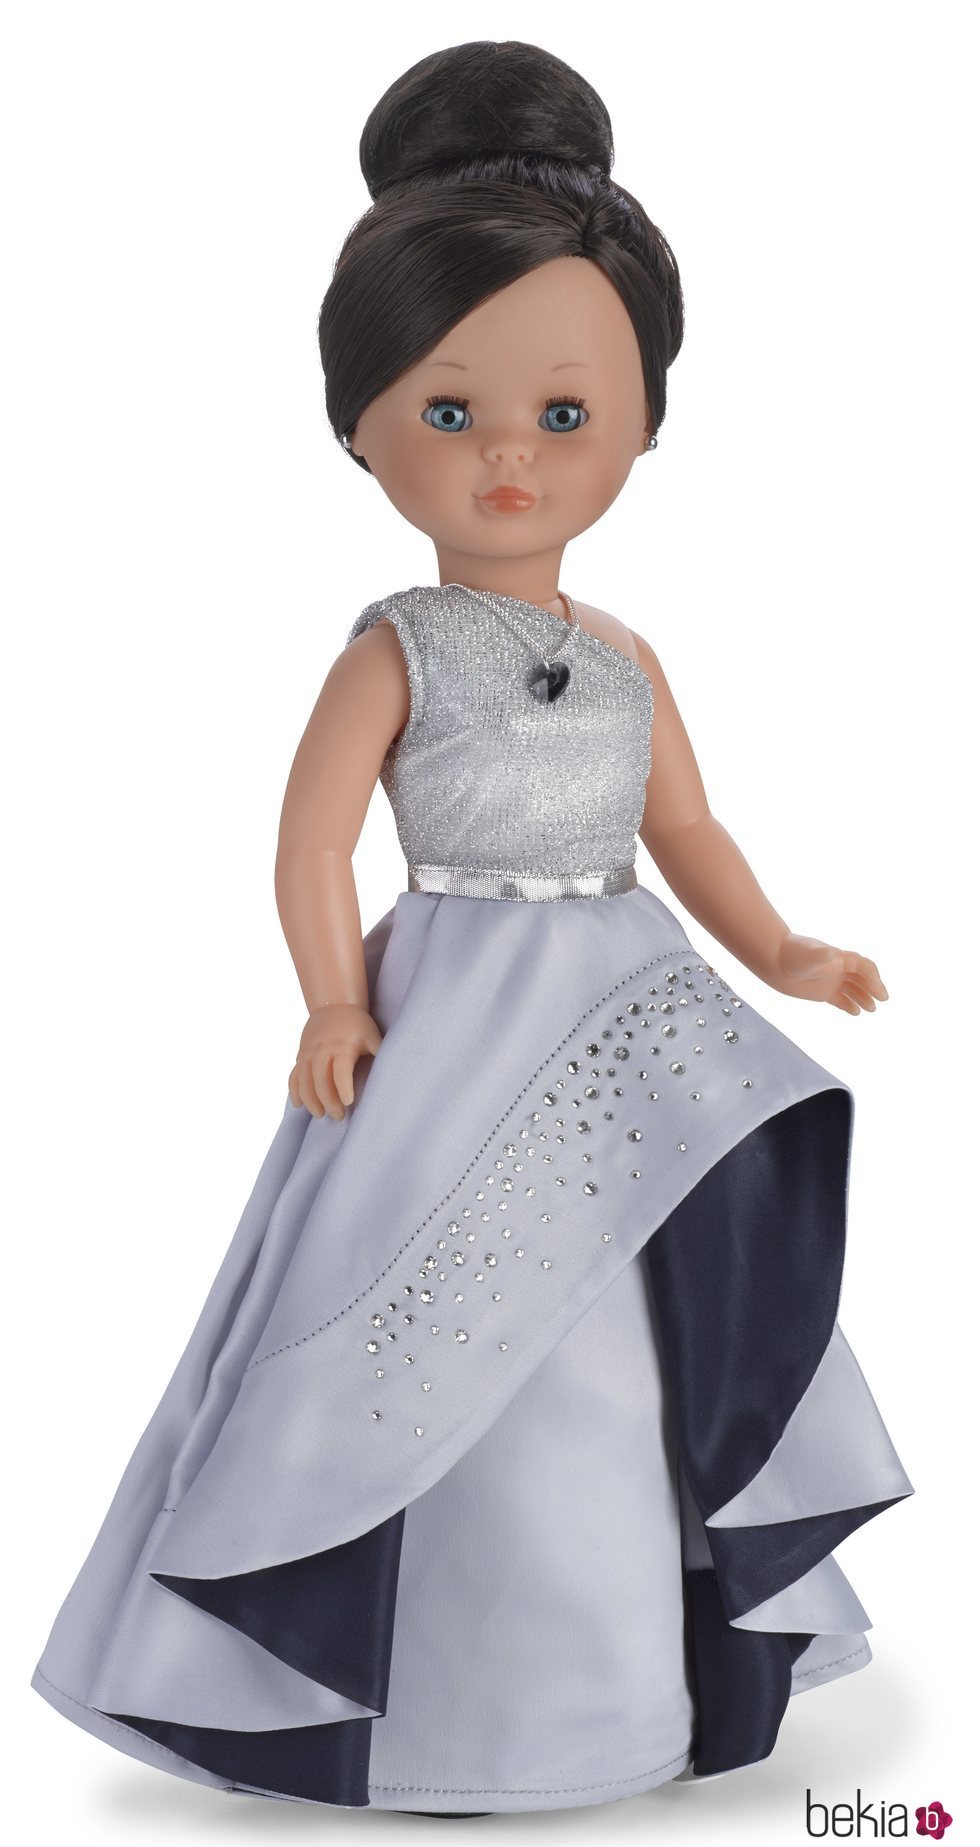 Una edición exclusiva de Nancy con incrustaciones de Swarovski celebra los 50 años de la muñeca